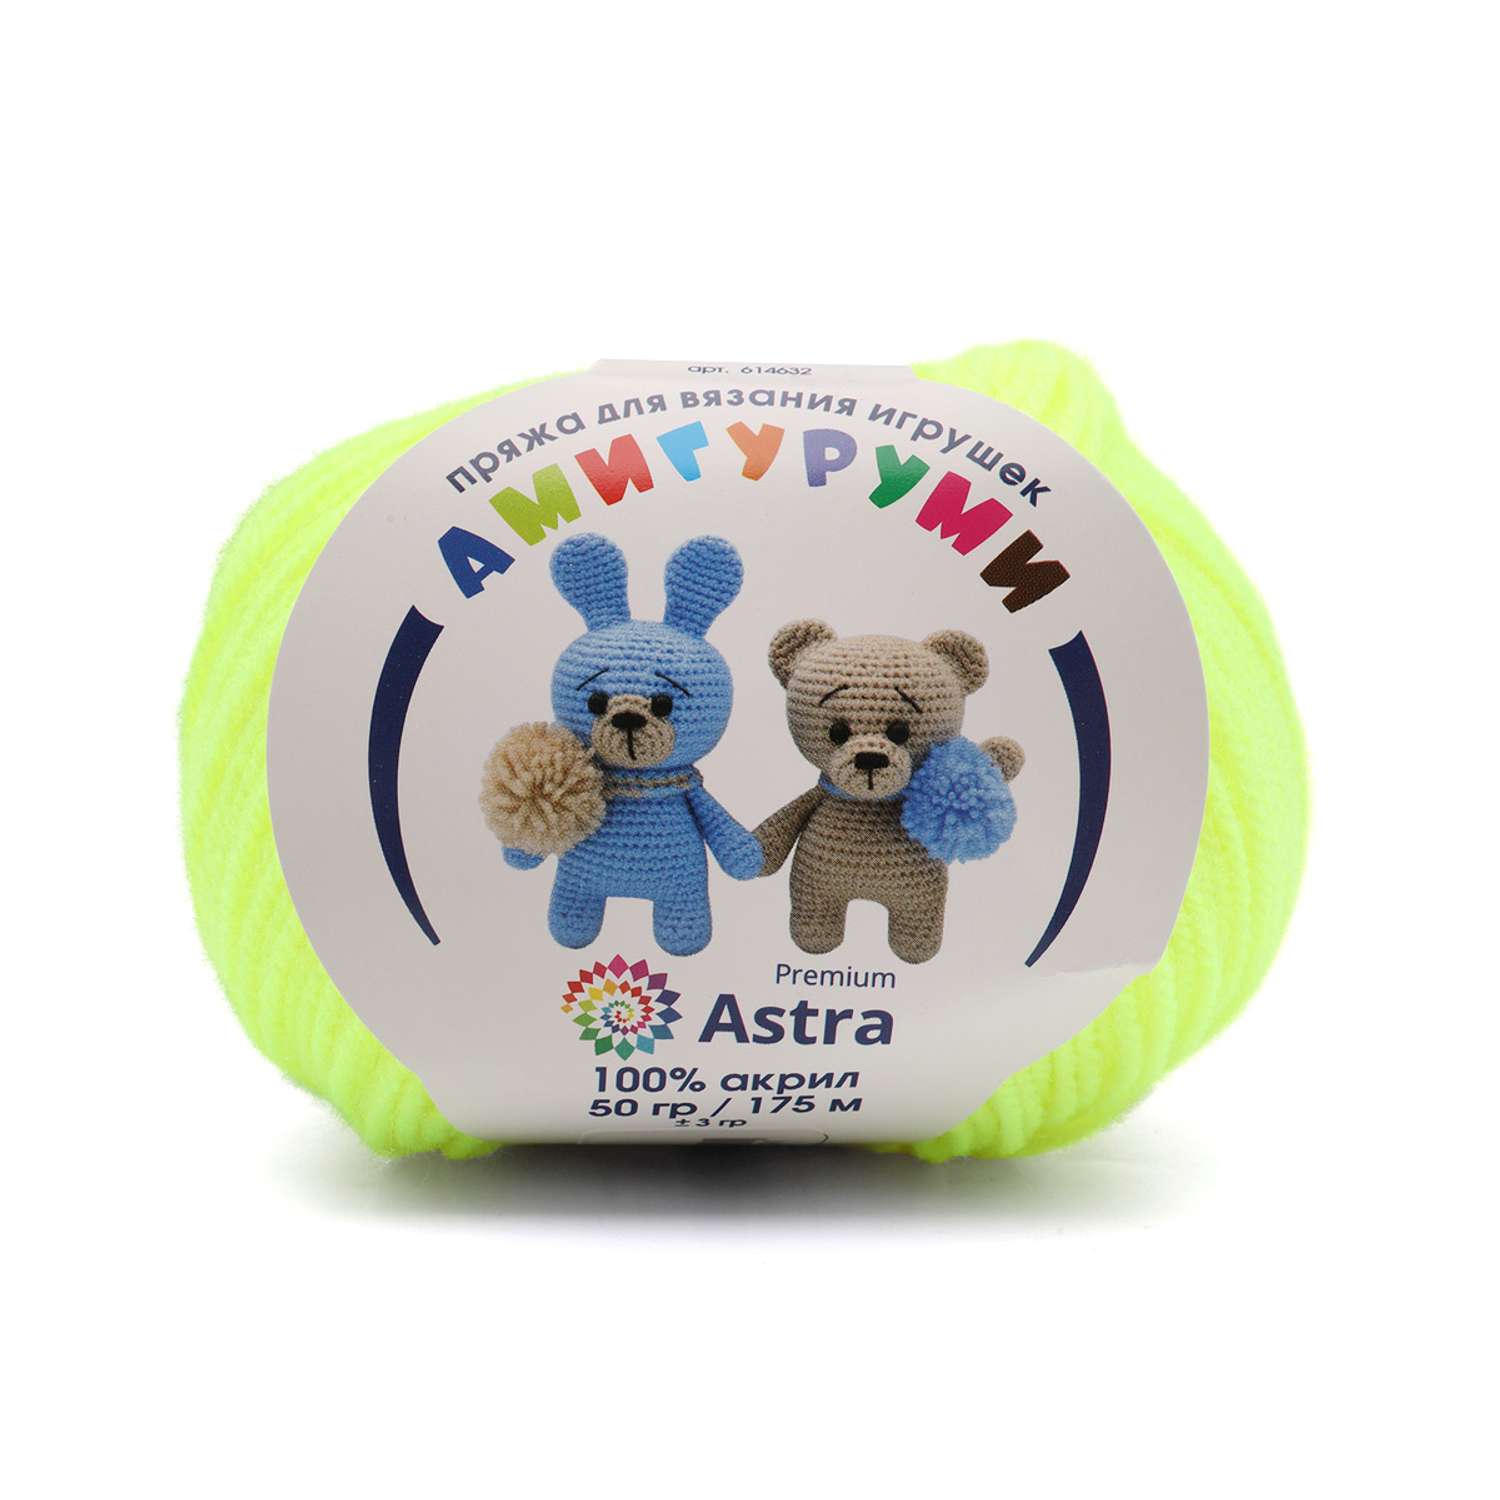 Пряжа для вязания Astra Premium амигуруми акрил для мягких игрушек 50 гр 175 м 236 салат неон 6 мотков - фото 1